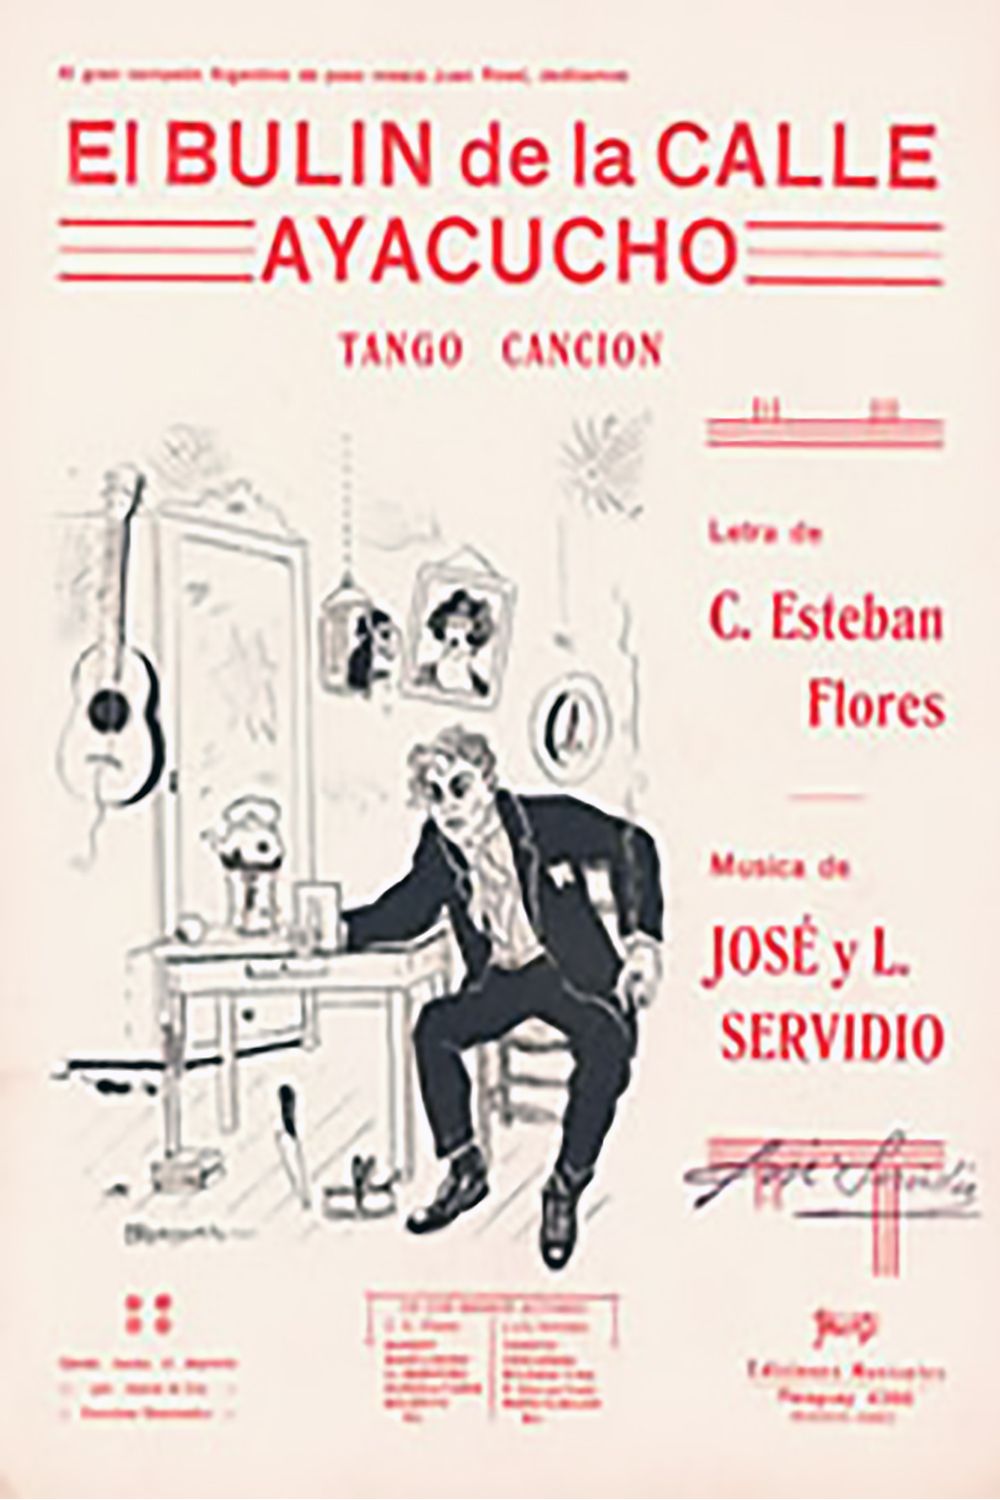 "El bulín de la calle Ayacucho", tapa de la partitura musical del tango.